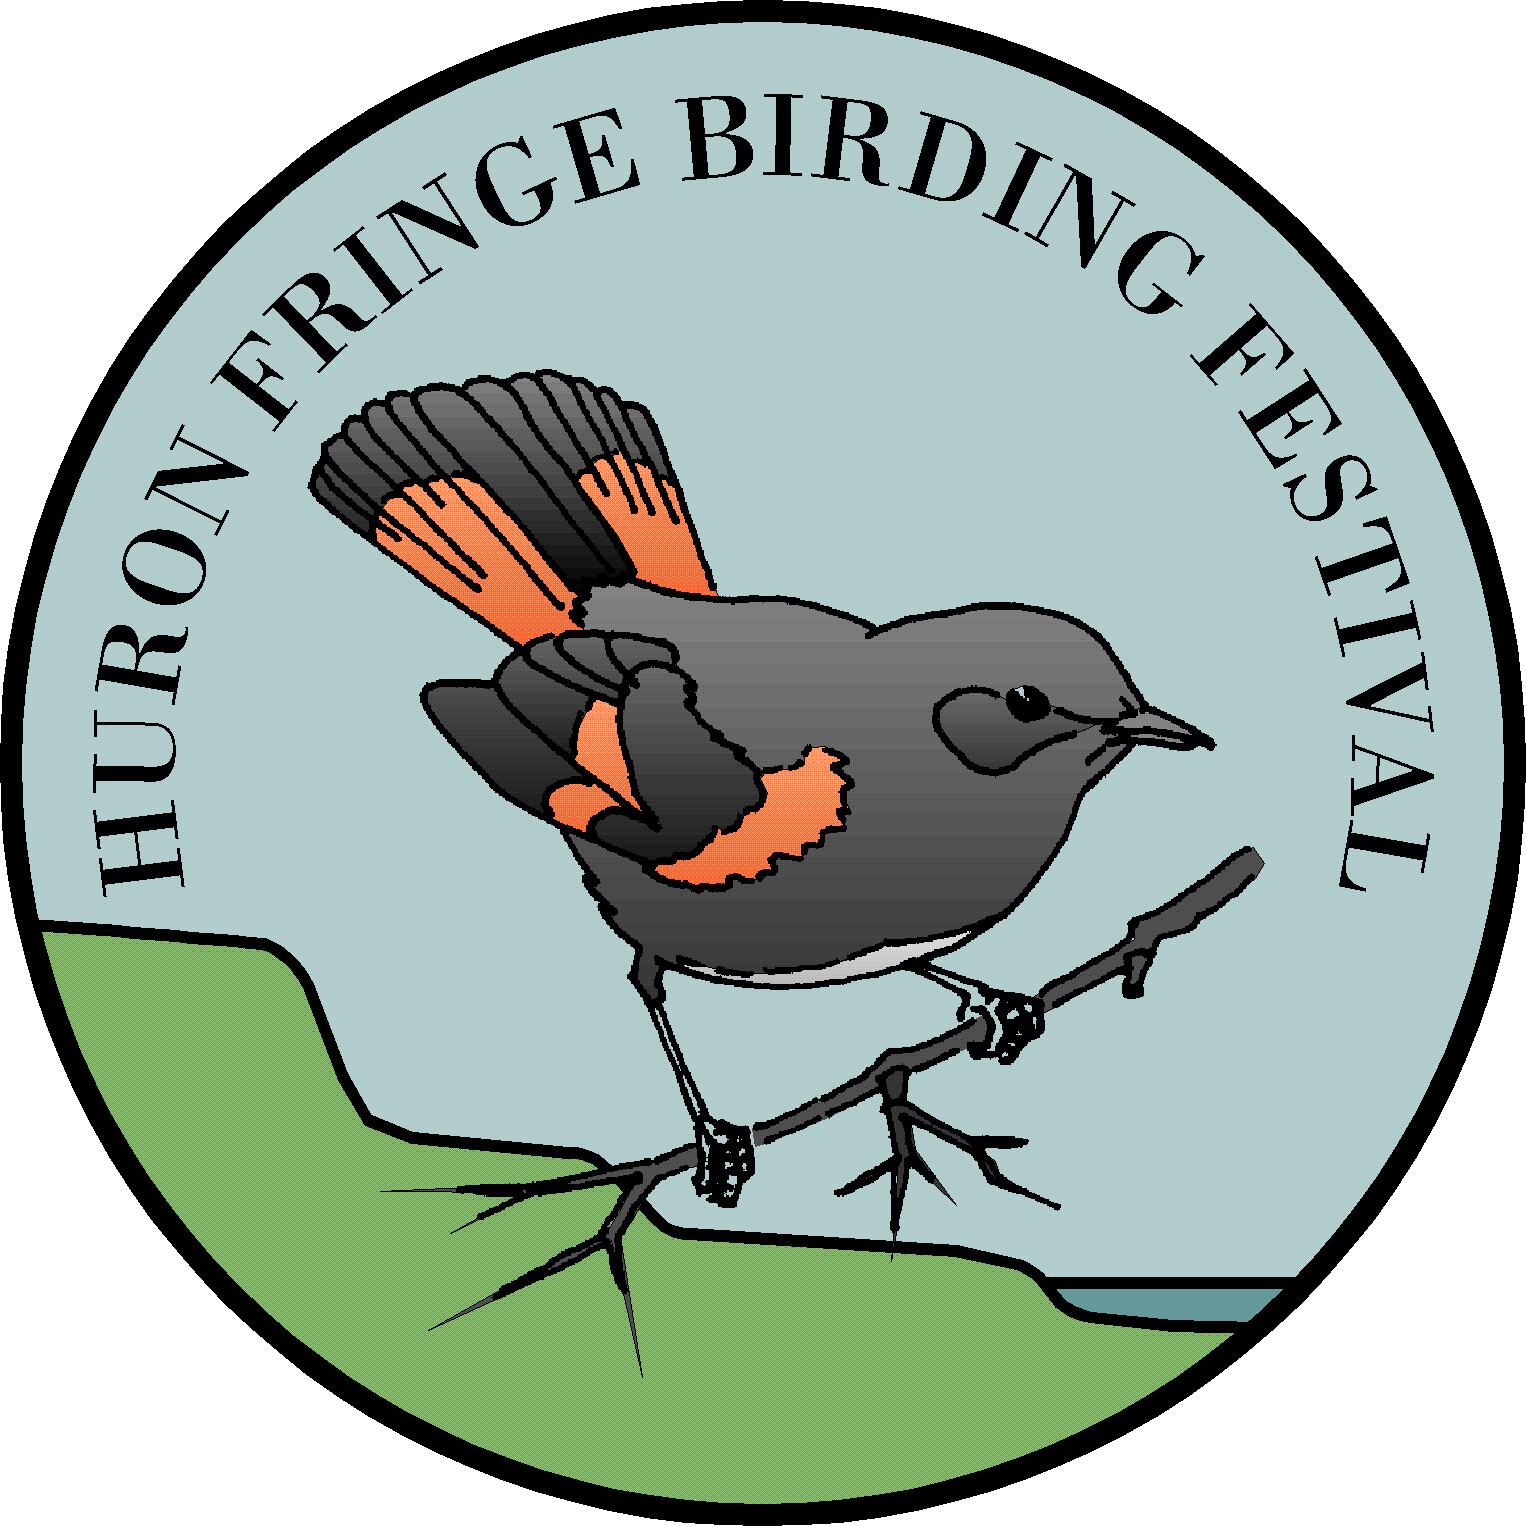 Birdwatching huronfringefest brdfest. Geology clipart pond dipping